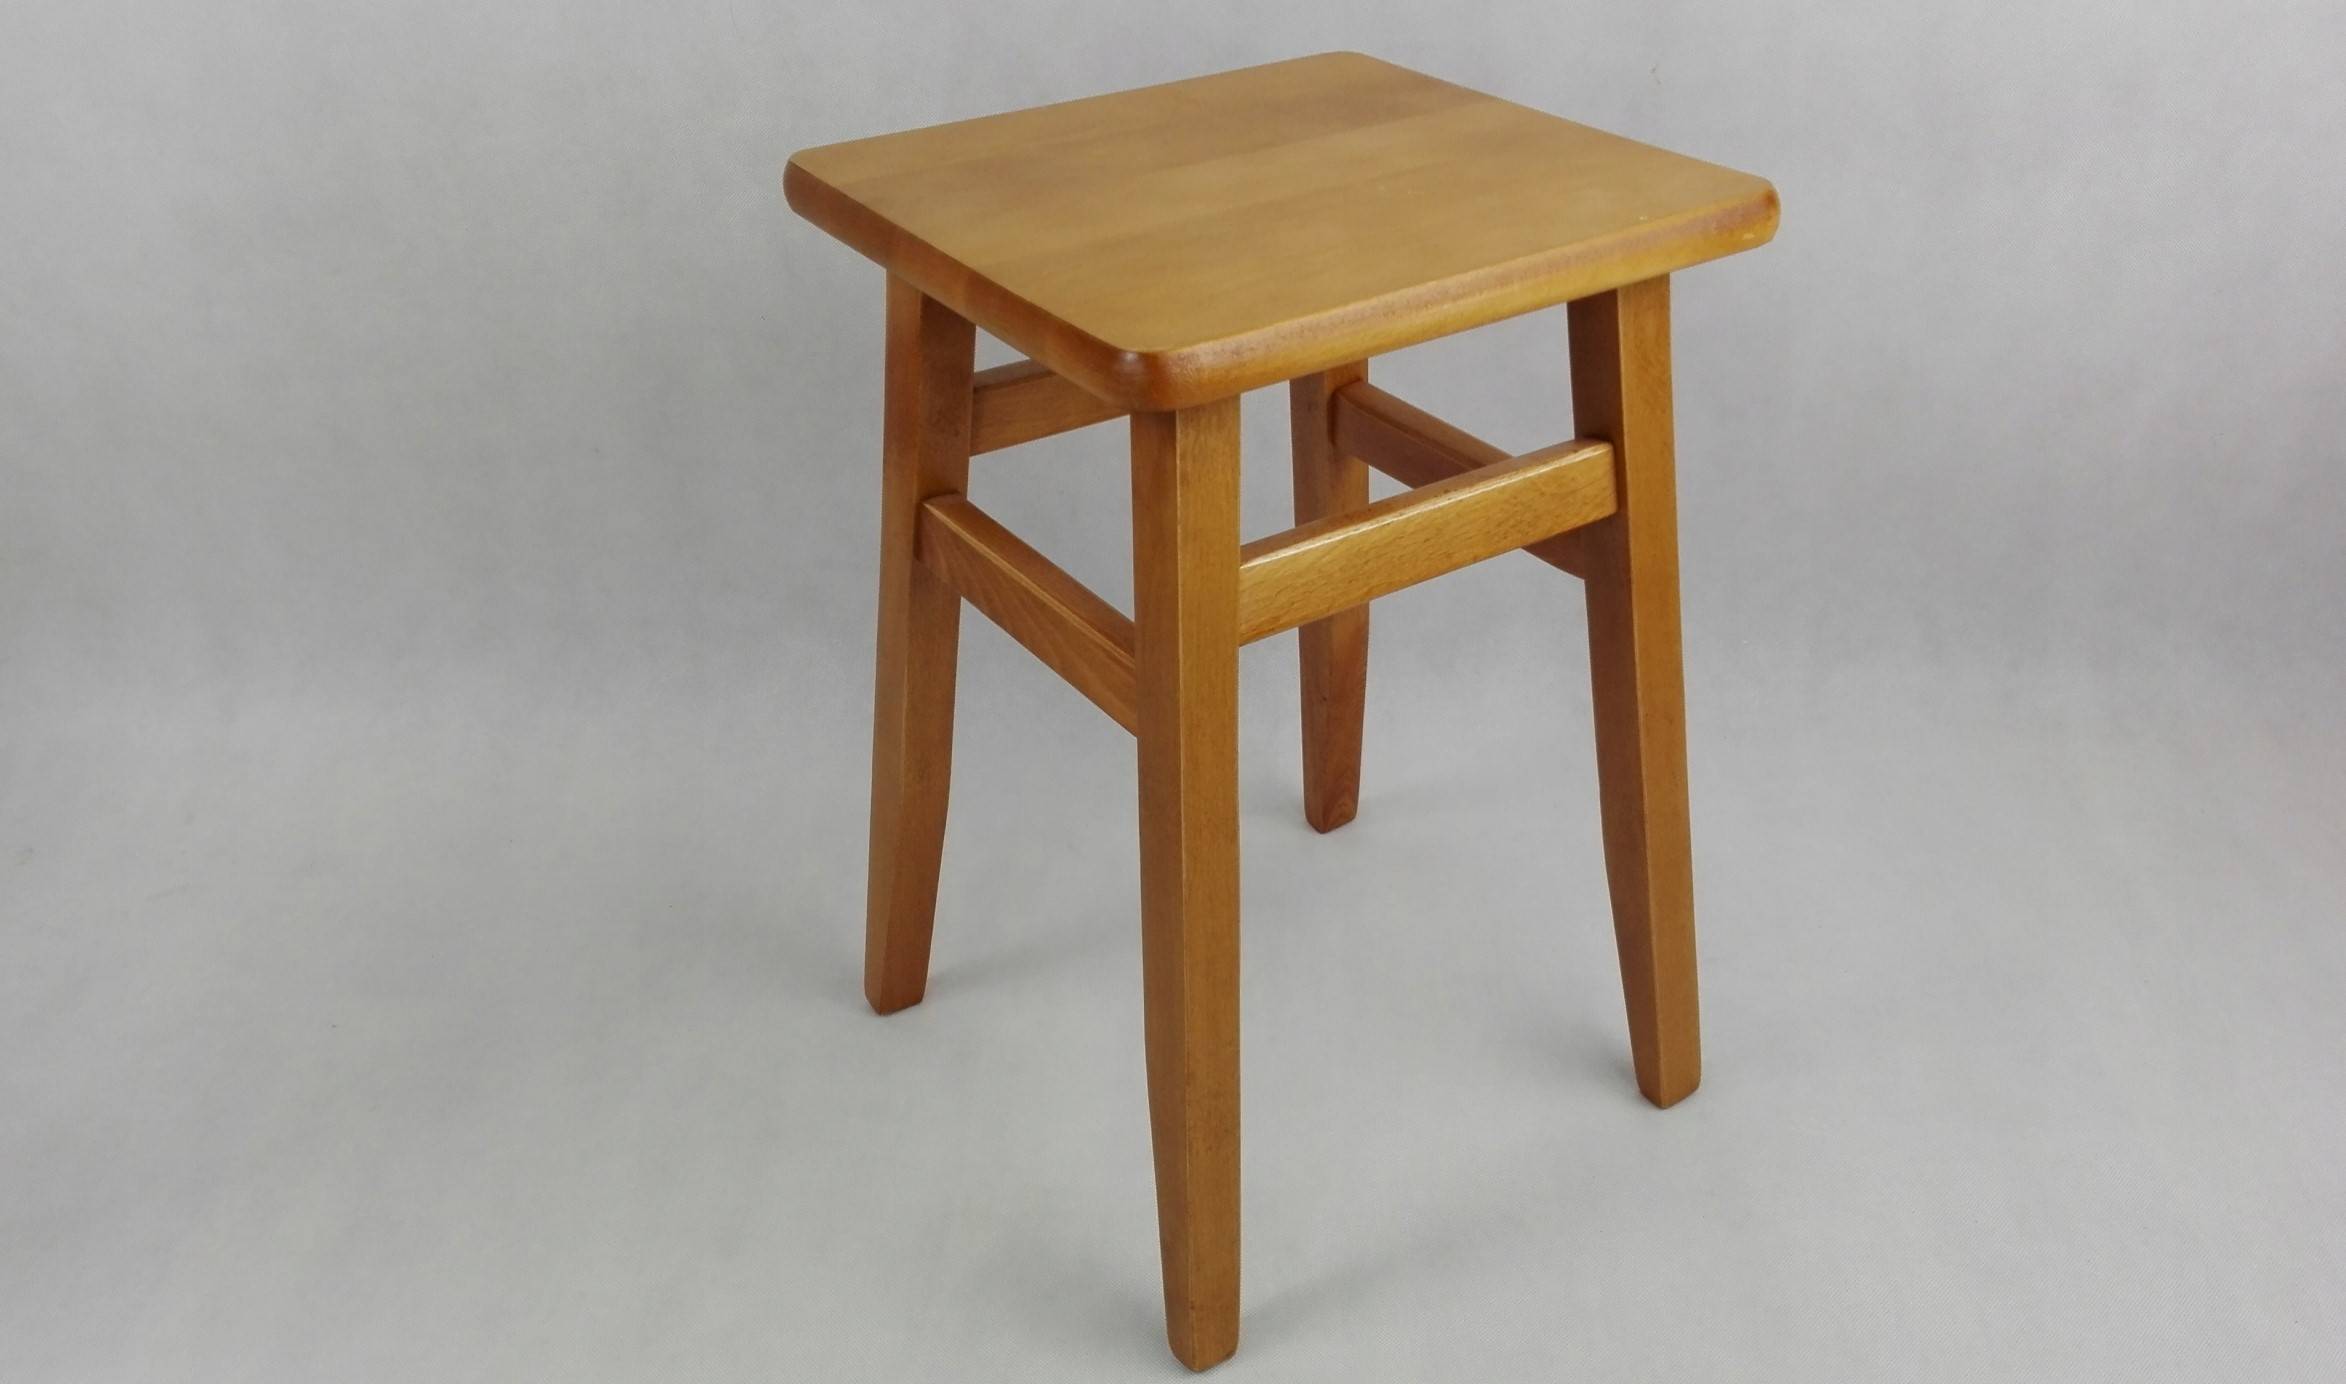  стула: стандарт табуретки, сиденья, спинки, размеры офисного и .